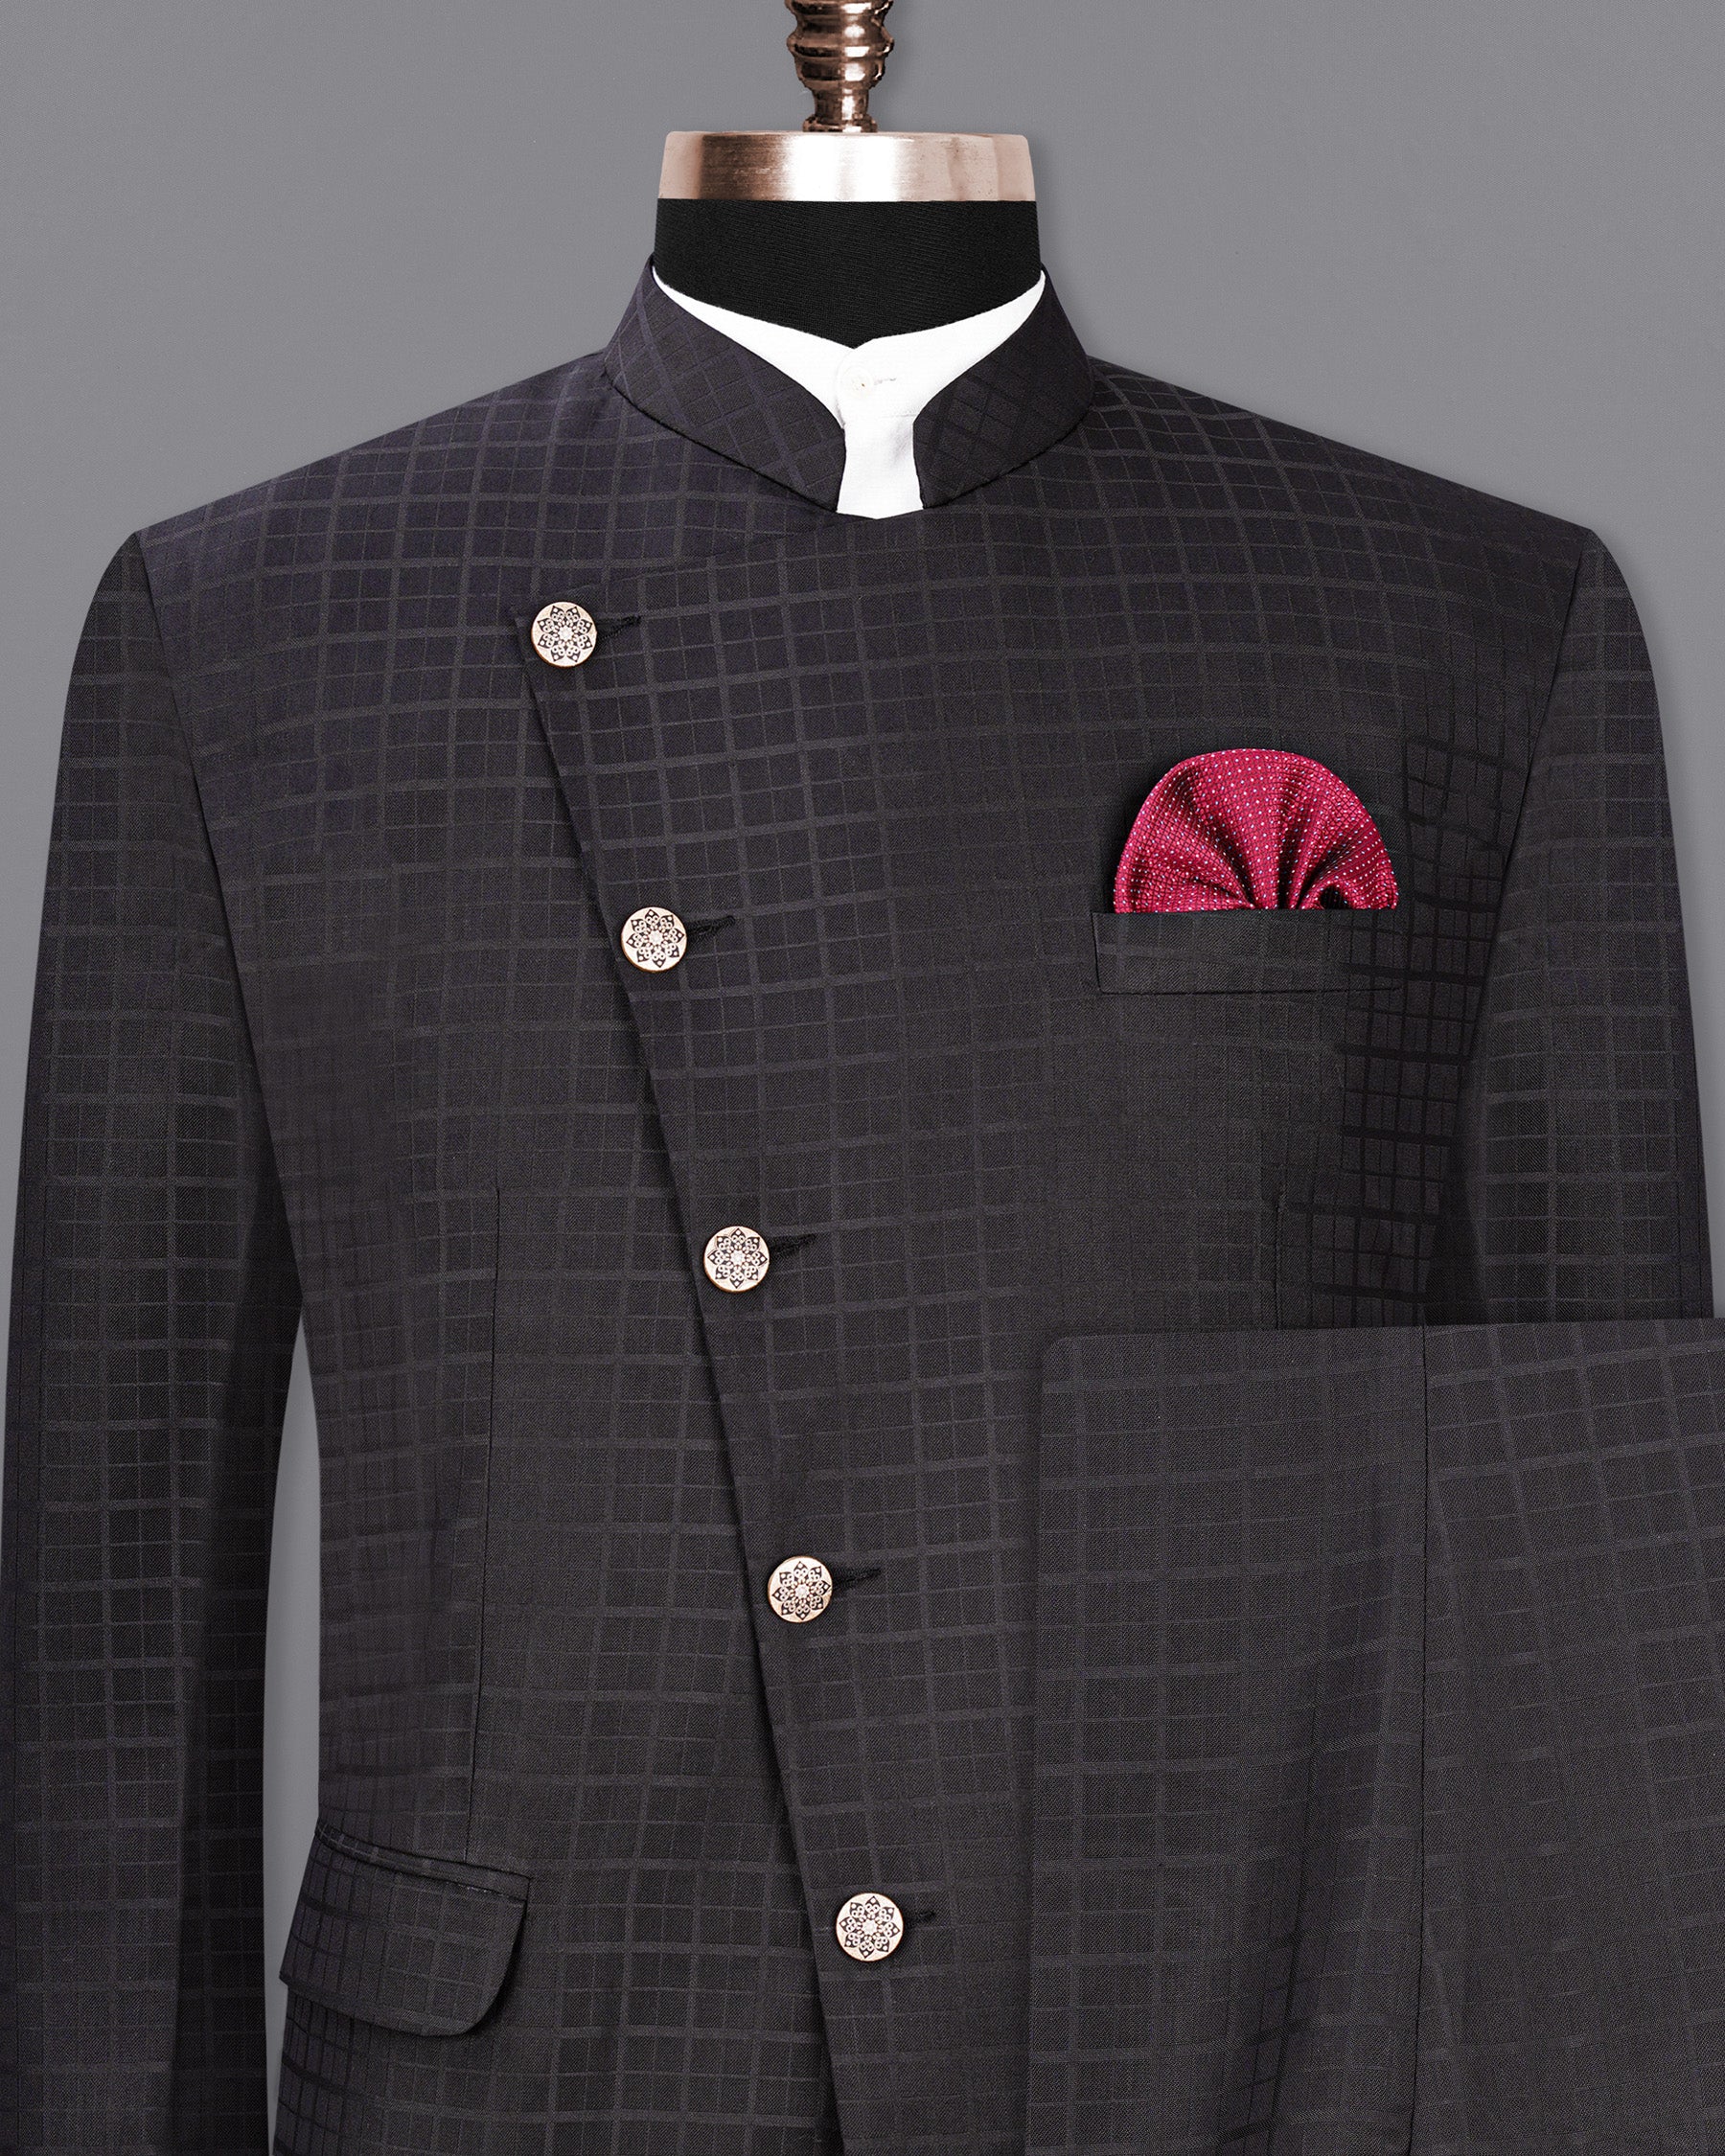 Baltic Sea Black Subtle Plaid Cross Placket Bandhgala Suit